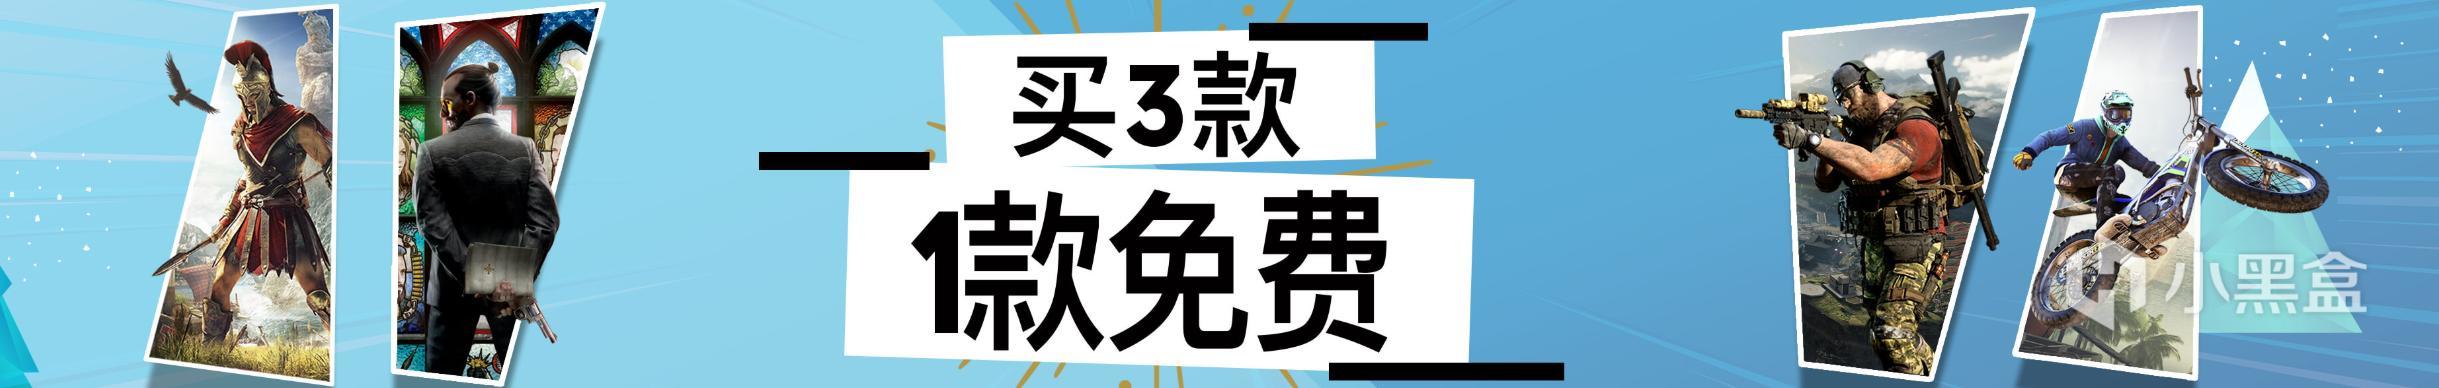 育碧Uplay商城冬促特惠推出“买3款，1款免费”活动 1%title%